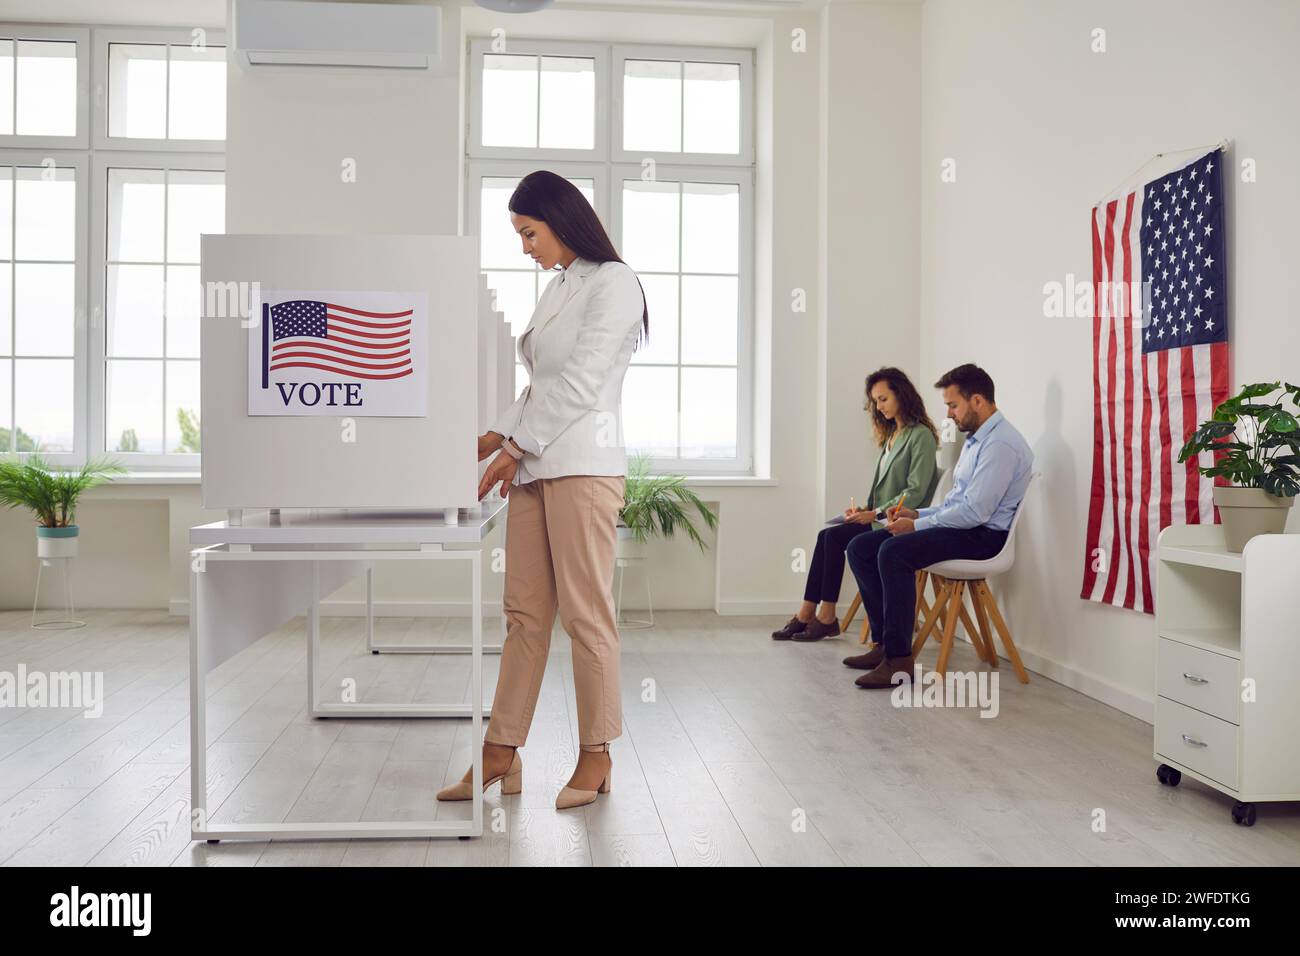 Jeune femme votante américaine debout au centre de vote dans la cabine de vote faisant un choix le jour de l'élection. Banque D'Images